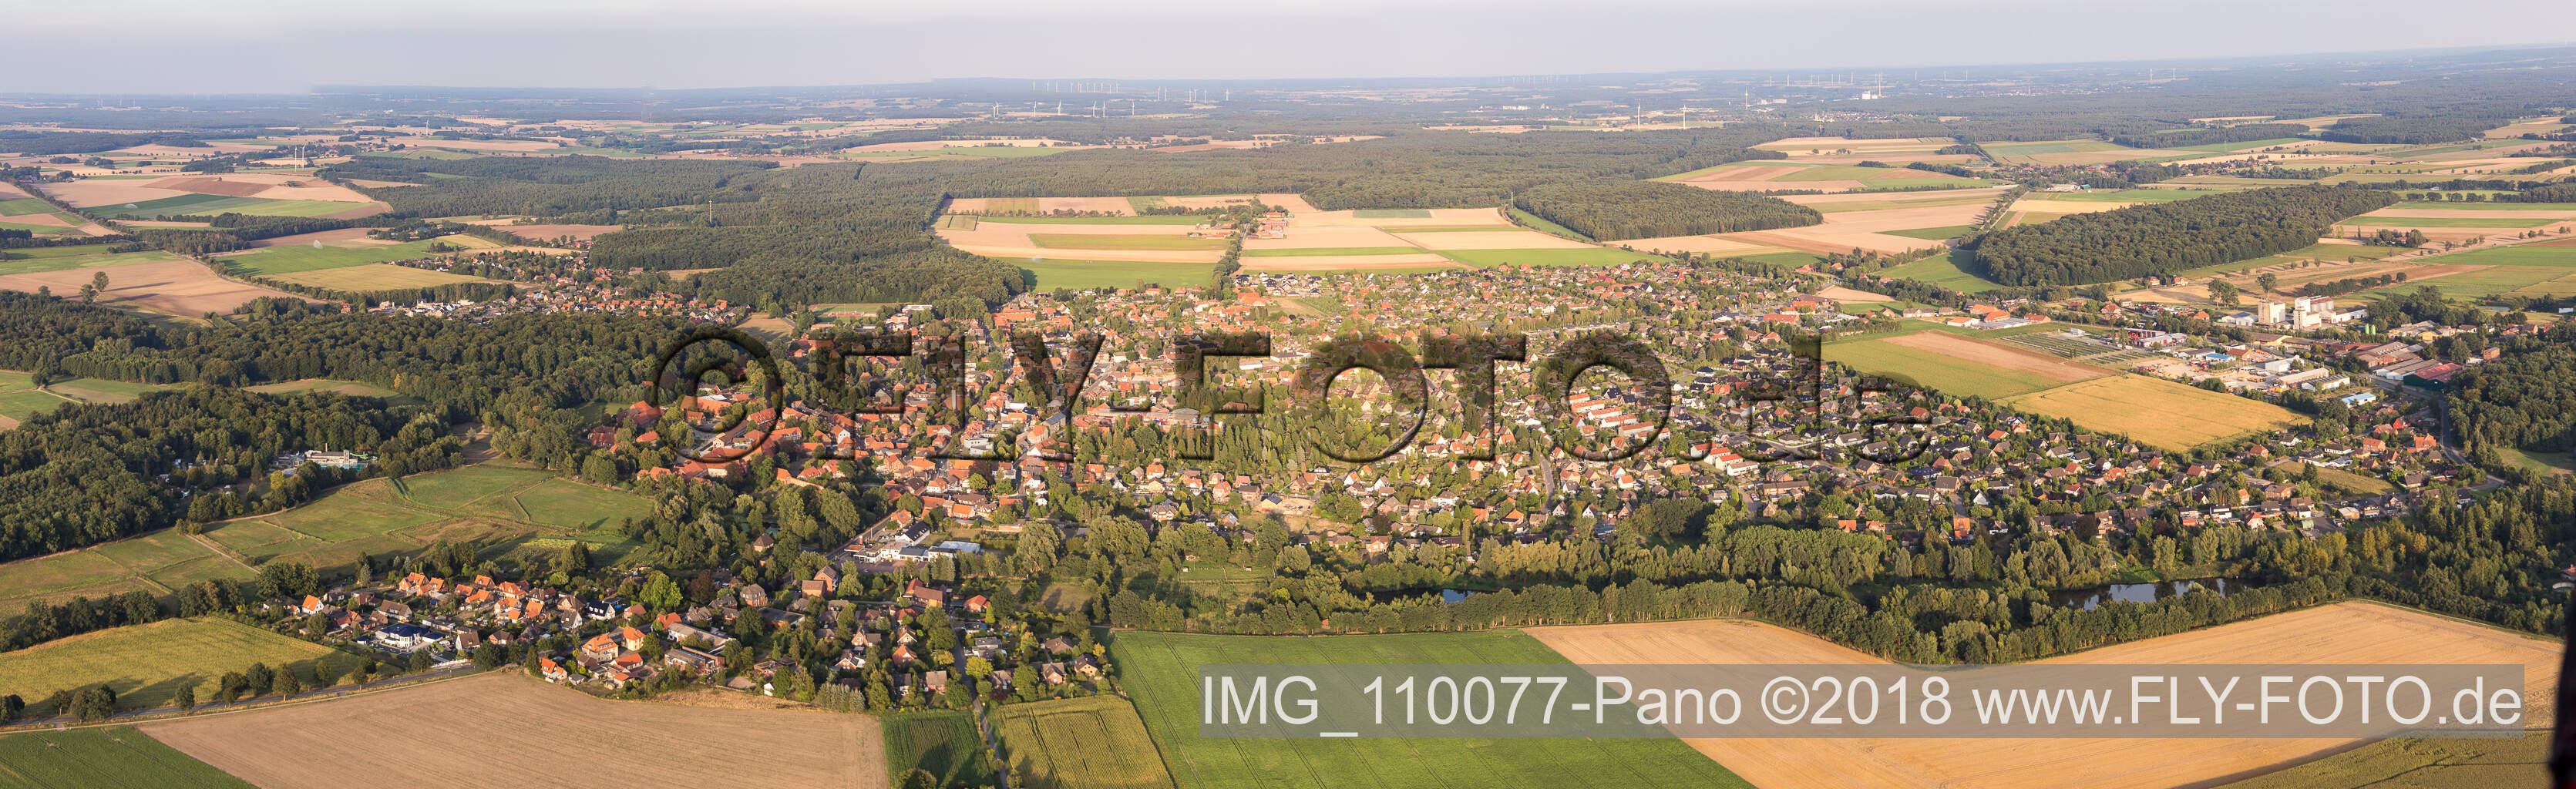 Vue aérienne de Vue panoramique en perspective des rues et des maisons des quartiers résidentiels à Ebstorf dans le département Basse-Saxe, Allemagne